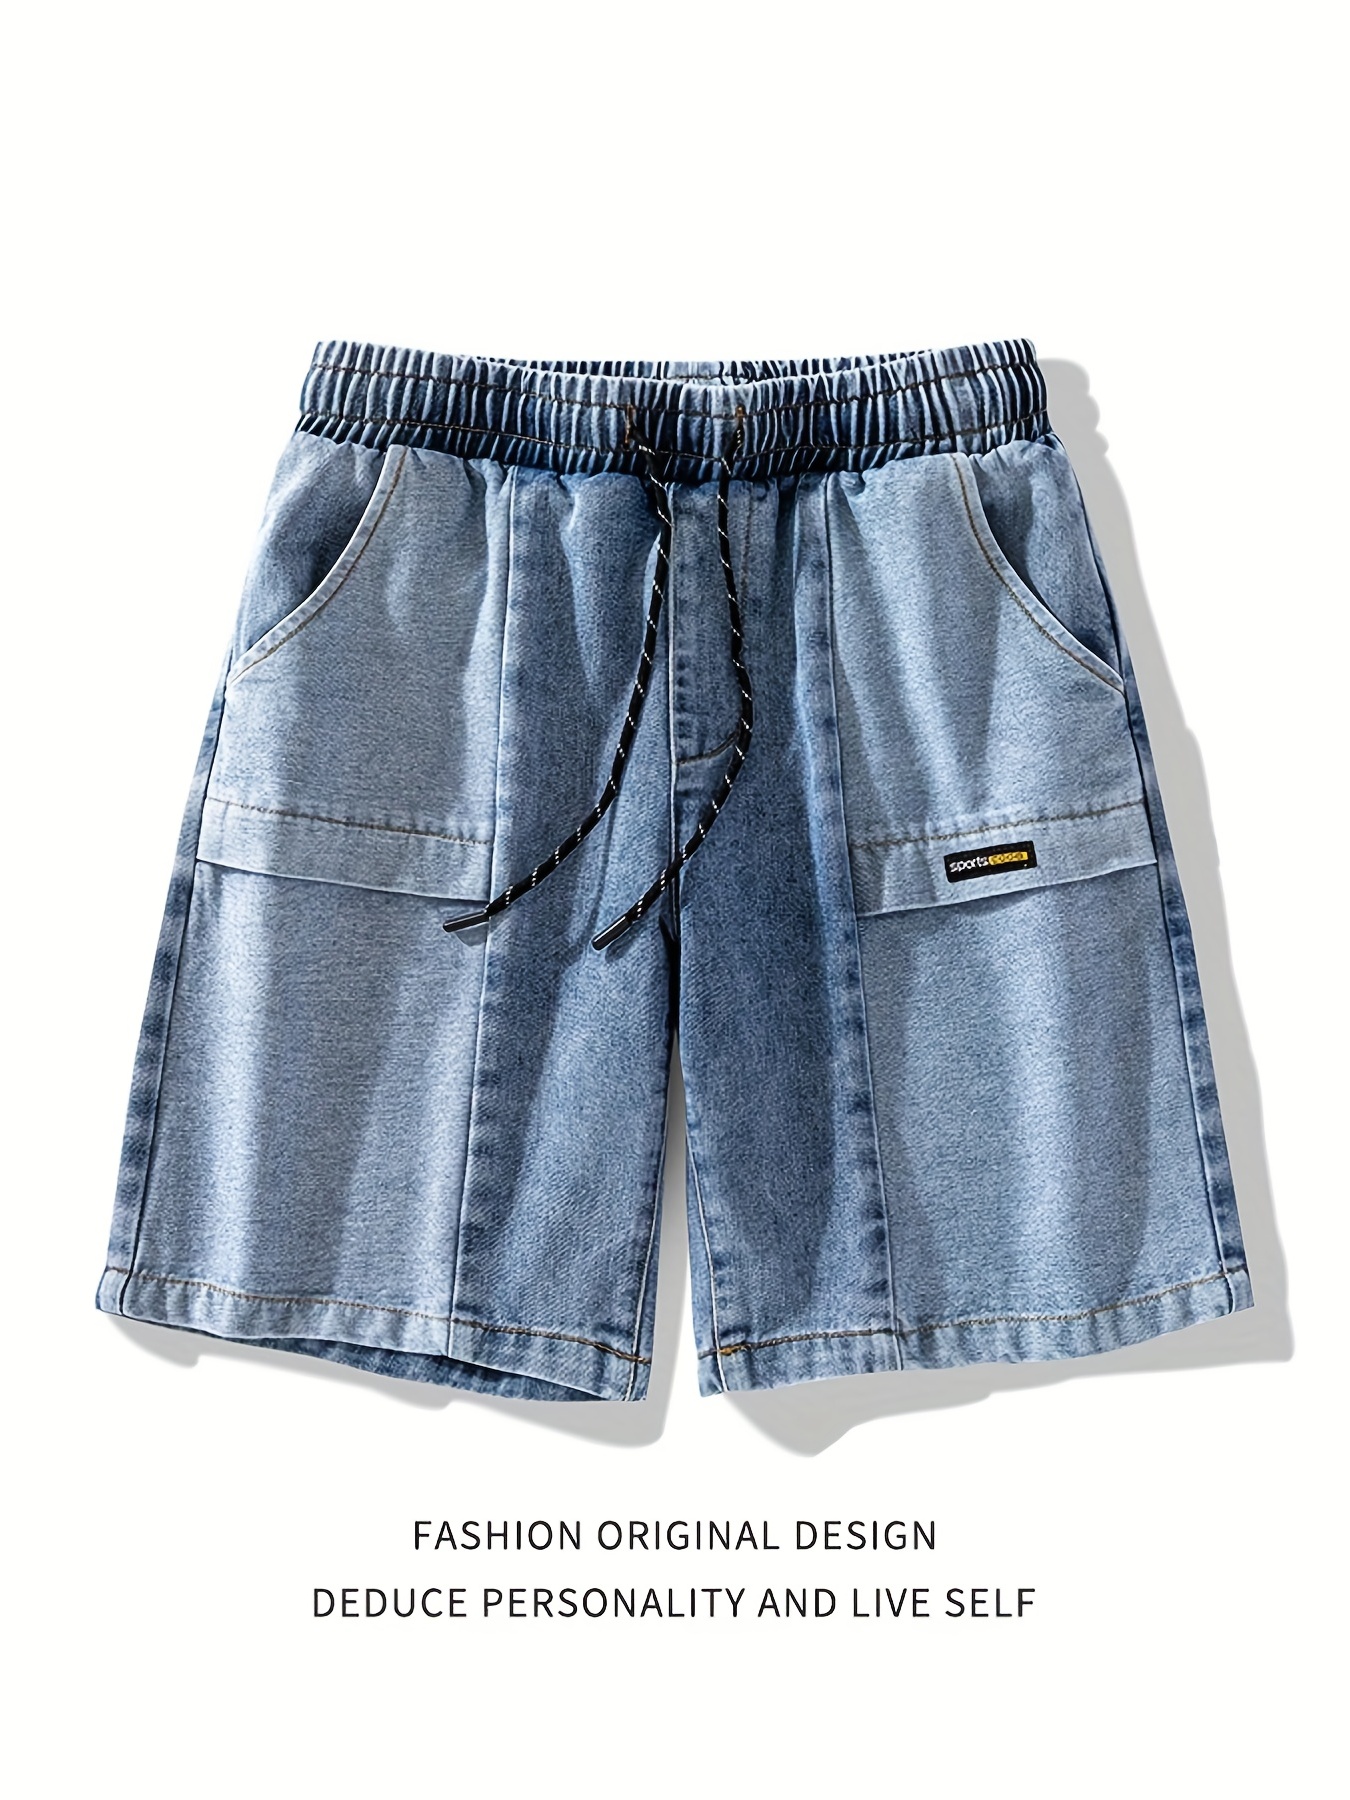 Pantalones cortos de mezclilla con bolsillos inclinados, estilo casual de calle para hombre, cintura con cordón, pantalones cortos de mezclilla desgastados para verano Jorts